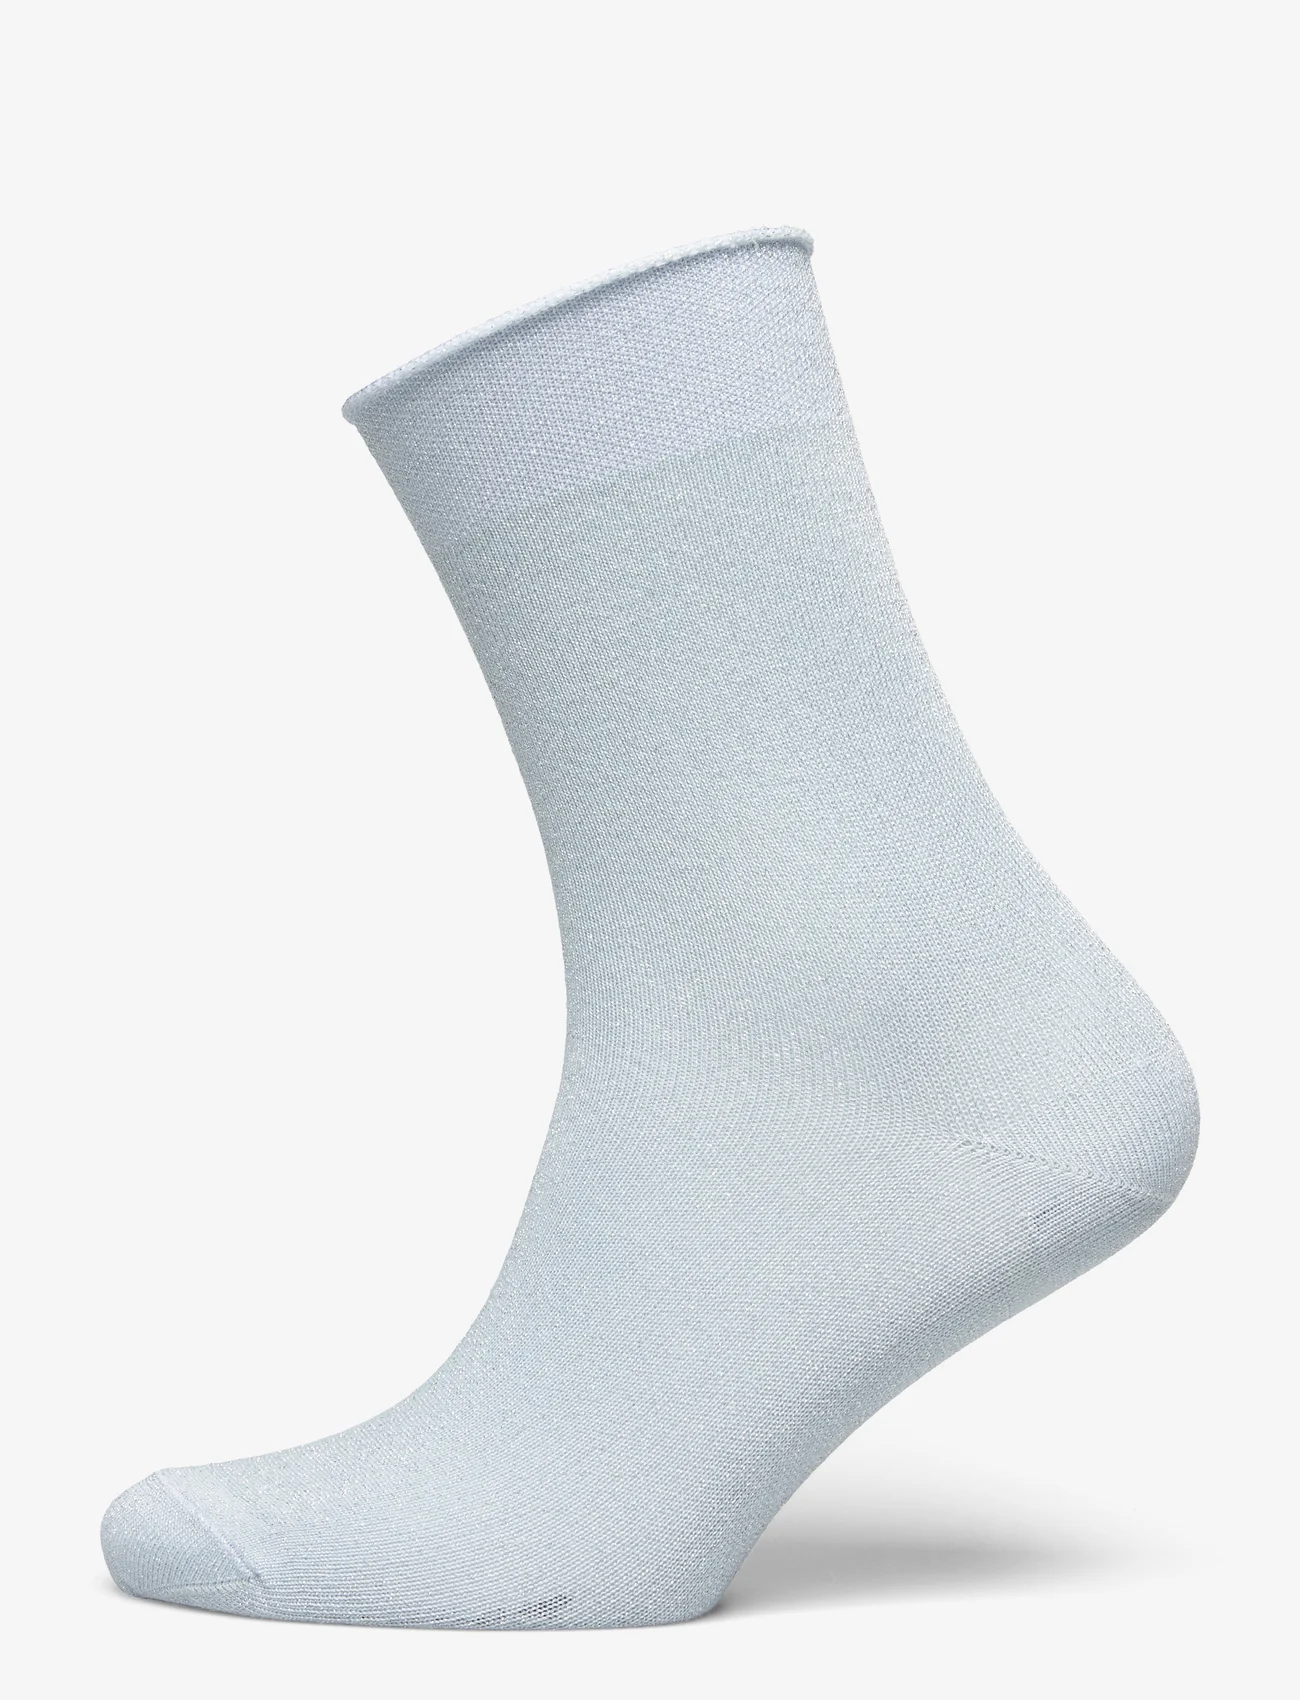 mp Denmark - Lucinda socks - lowest prices - winter sky - 0